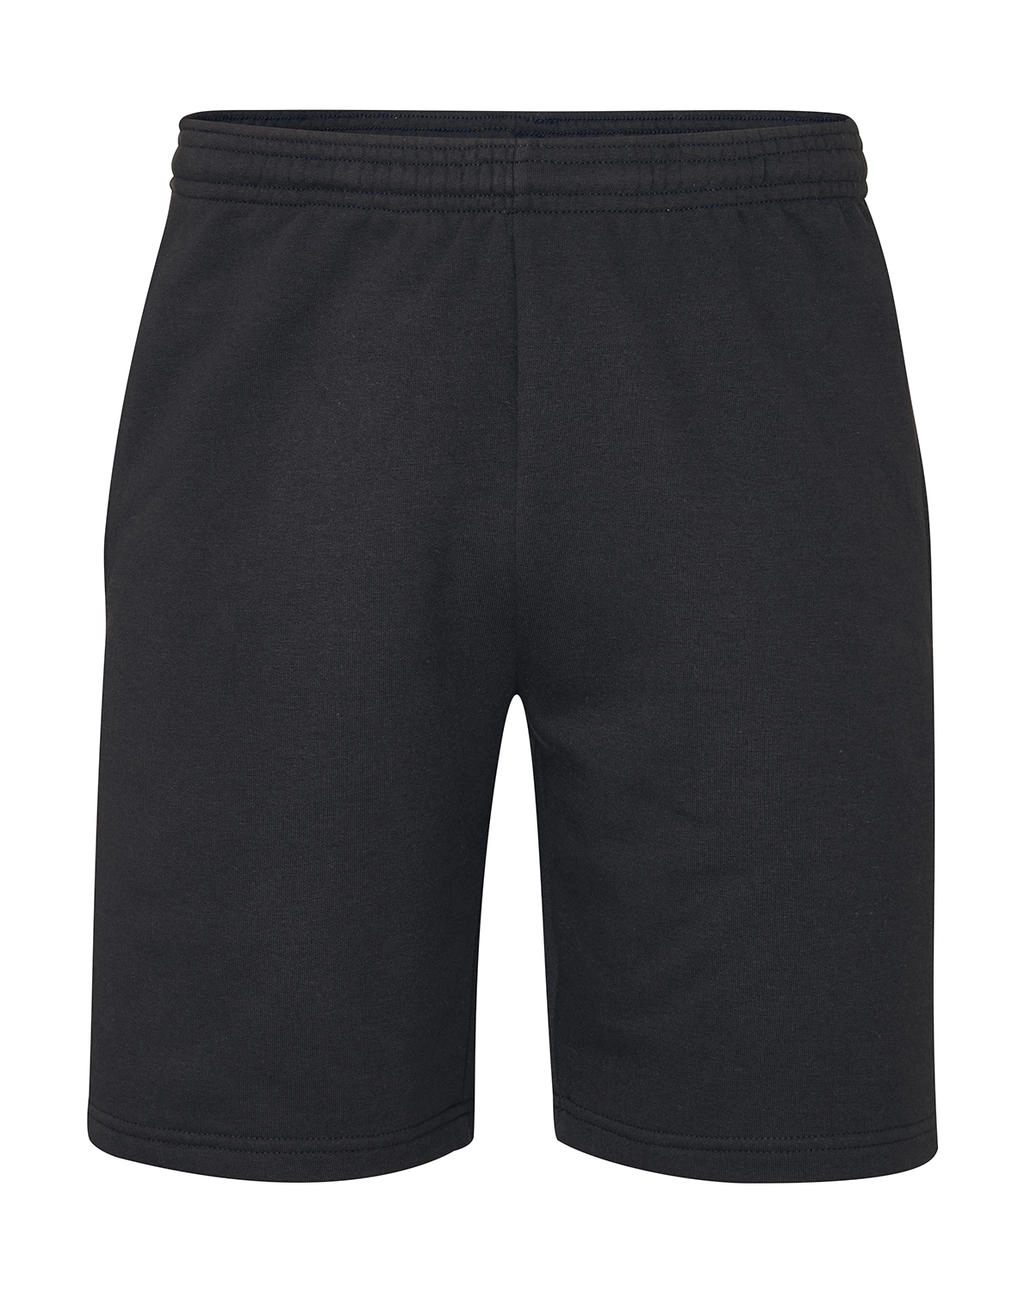 Essential Shorts zum Besticken und Bedrucken in der Farbe Black mit Ihren Logo, Schriftzug oder Motiv.